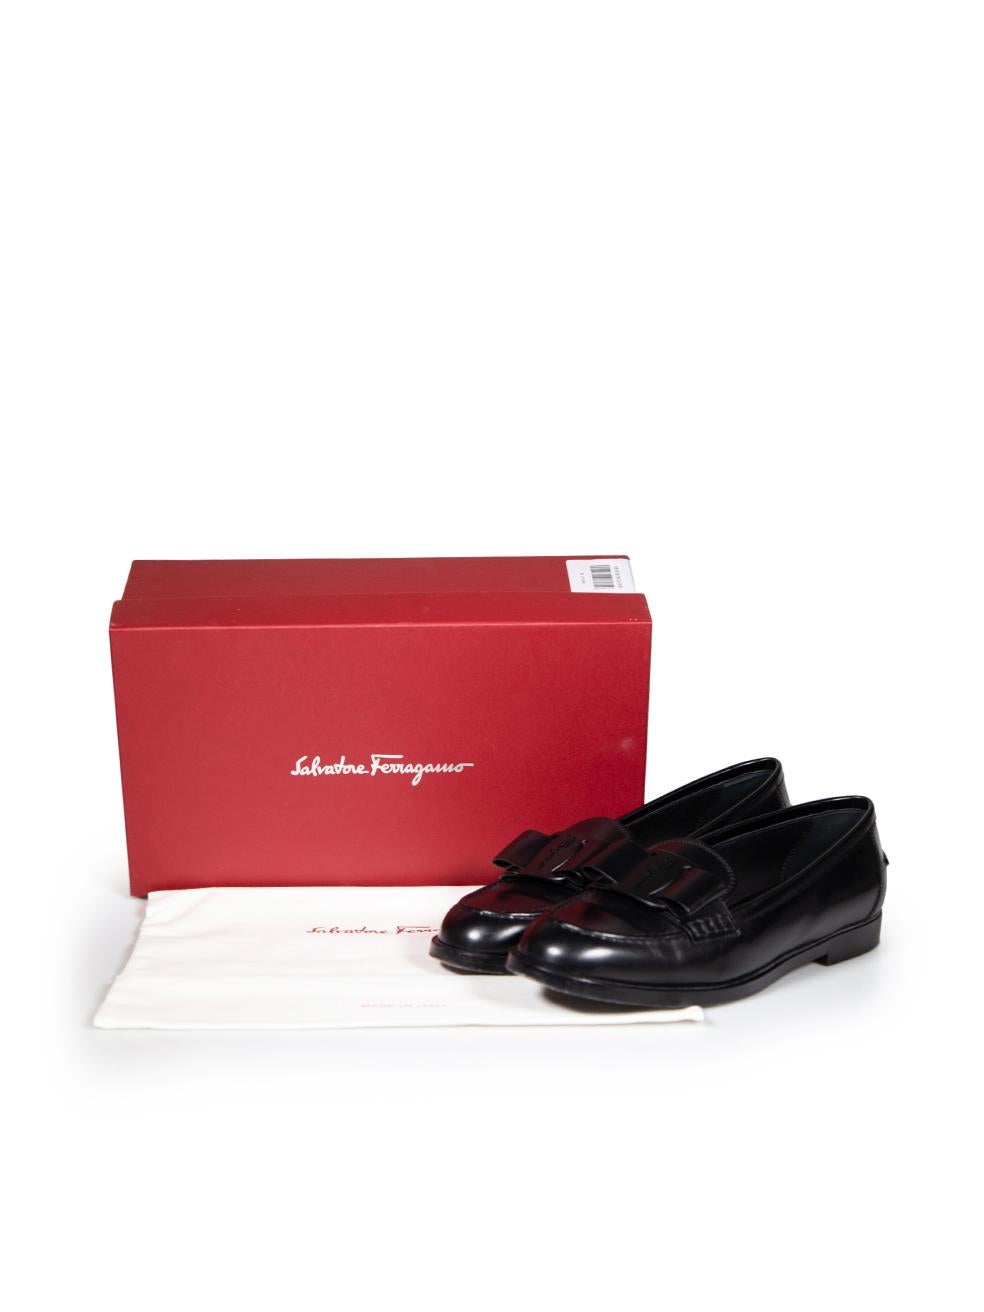 Salvatore Ferragamo Black Leather Vivaldo Logo Loafers Size US 9 For Sale 1